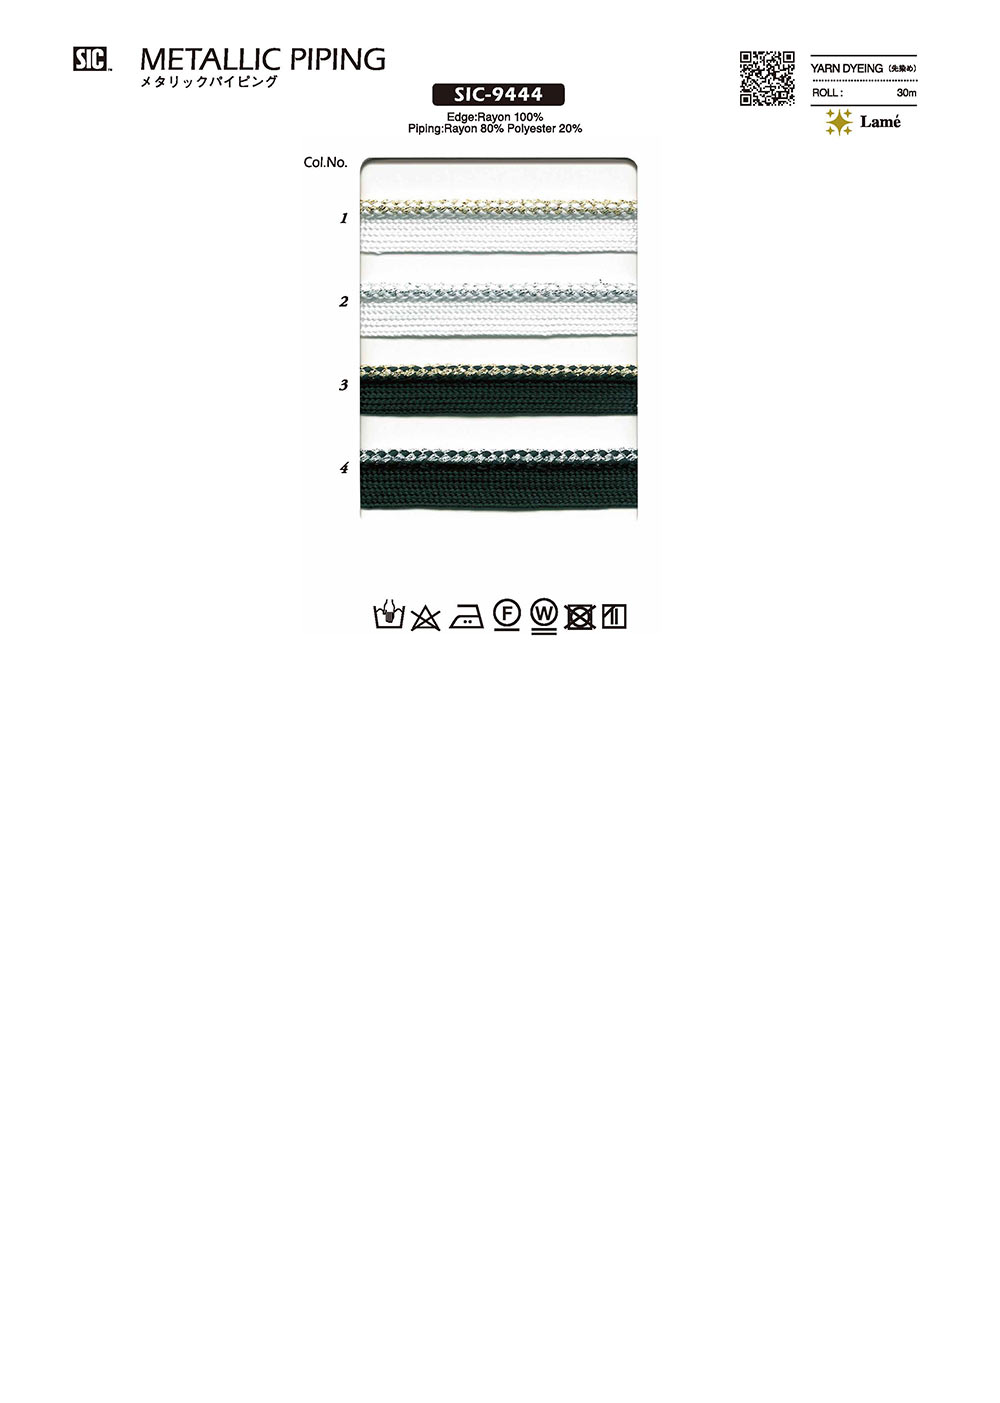 SIC-9444 Metallisches Rohrleitungsband[Bandbandschnur] SHINDO(SIC)